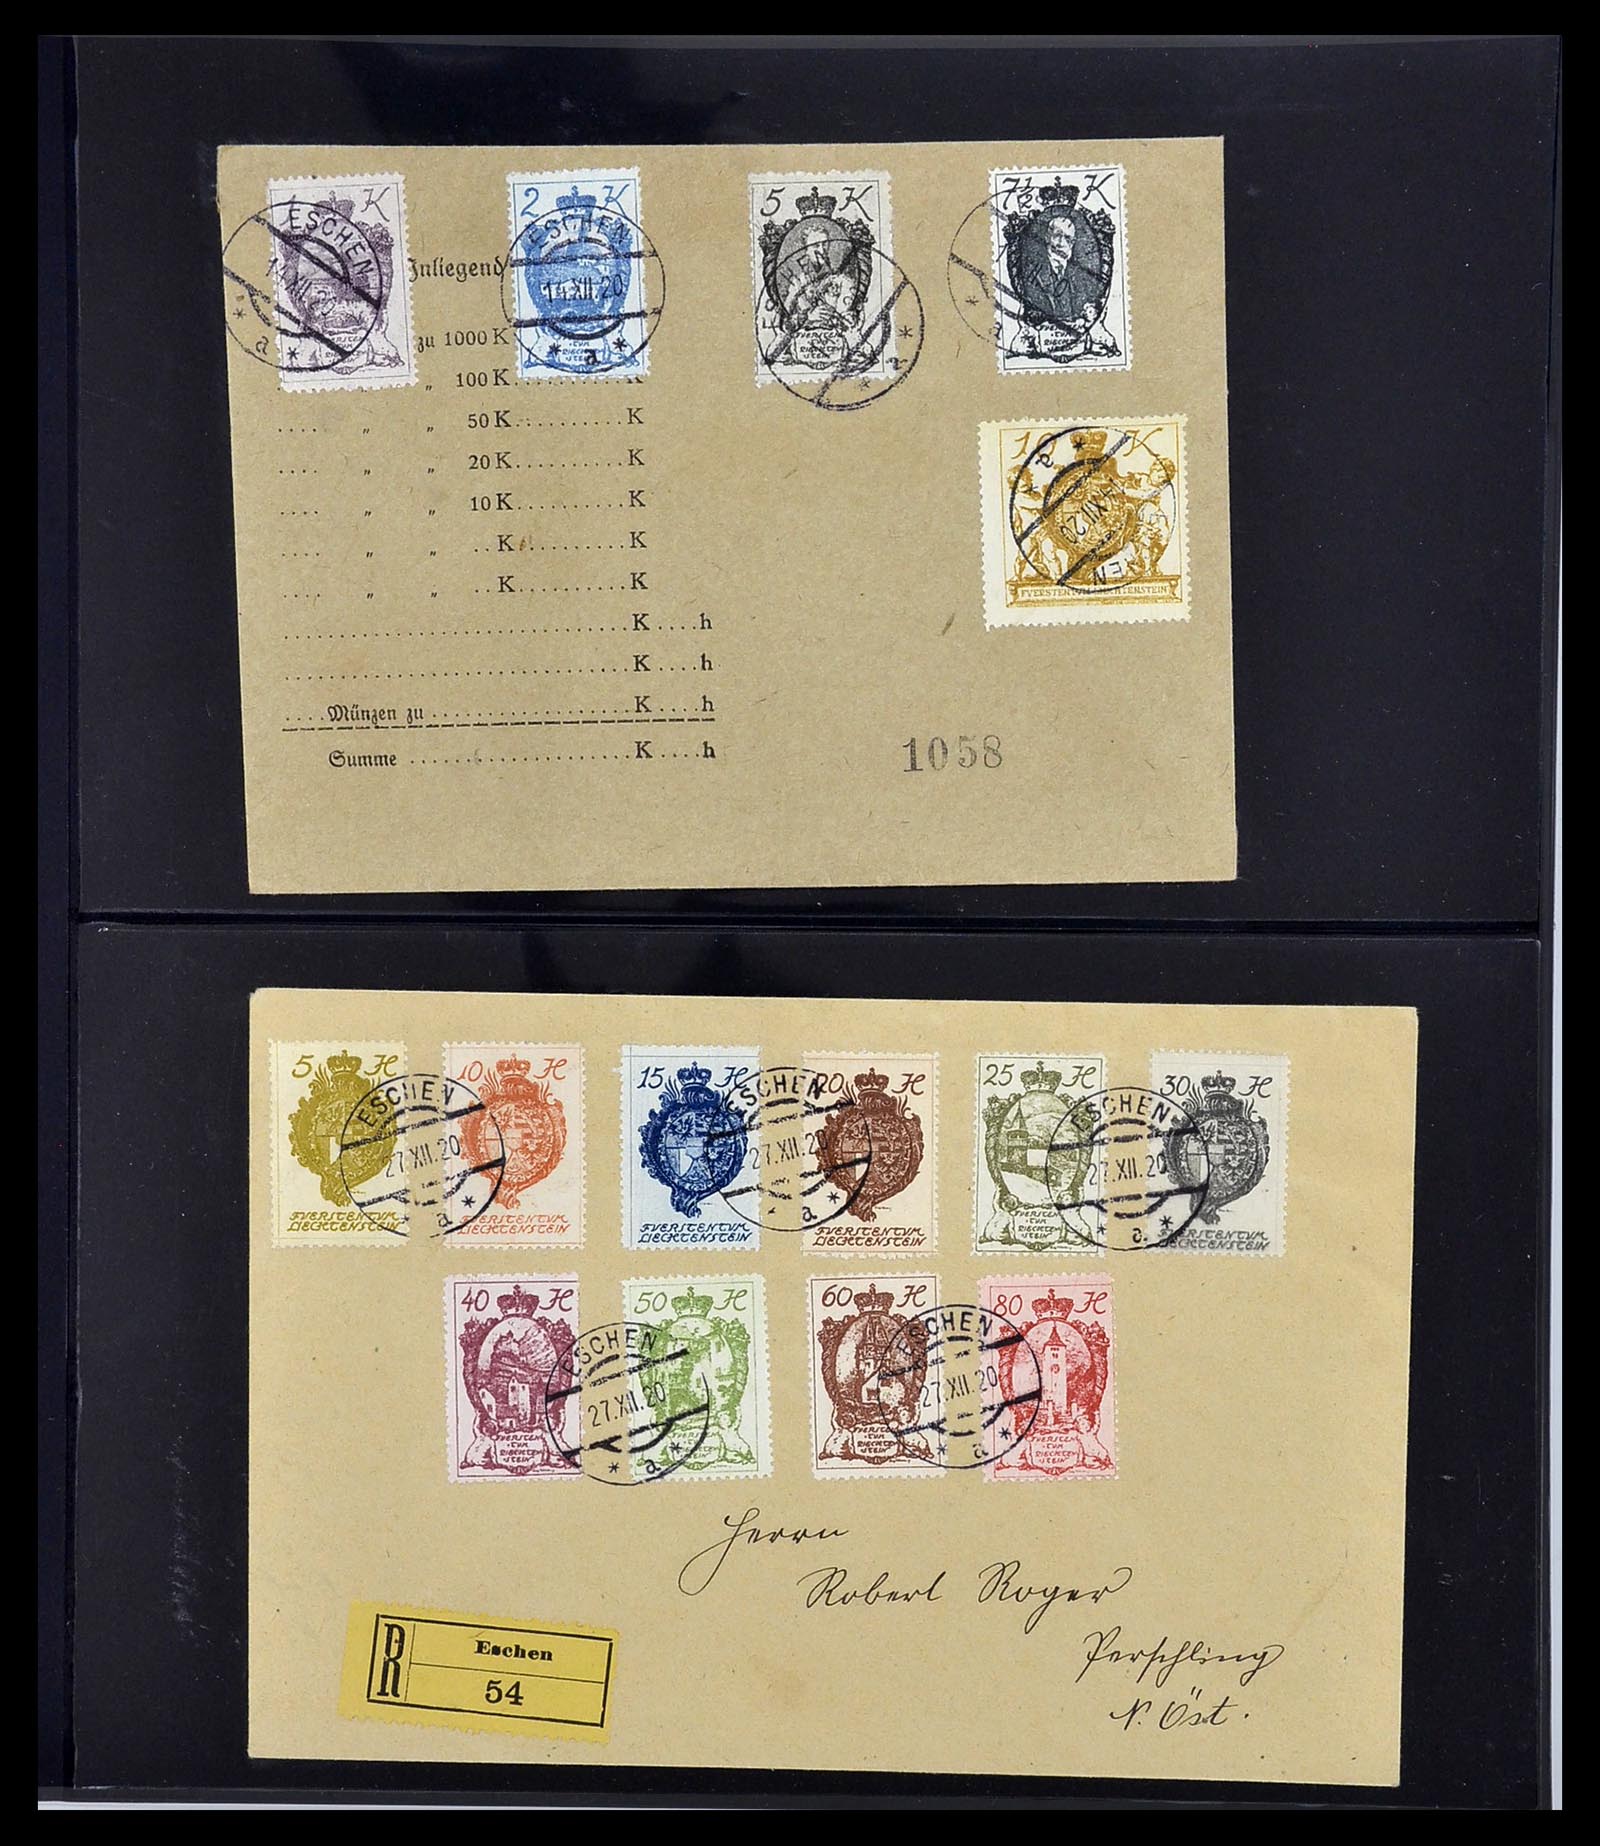 34231 202 - Stamp collection 34231 Liechtenstein 1912-2020!